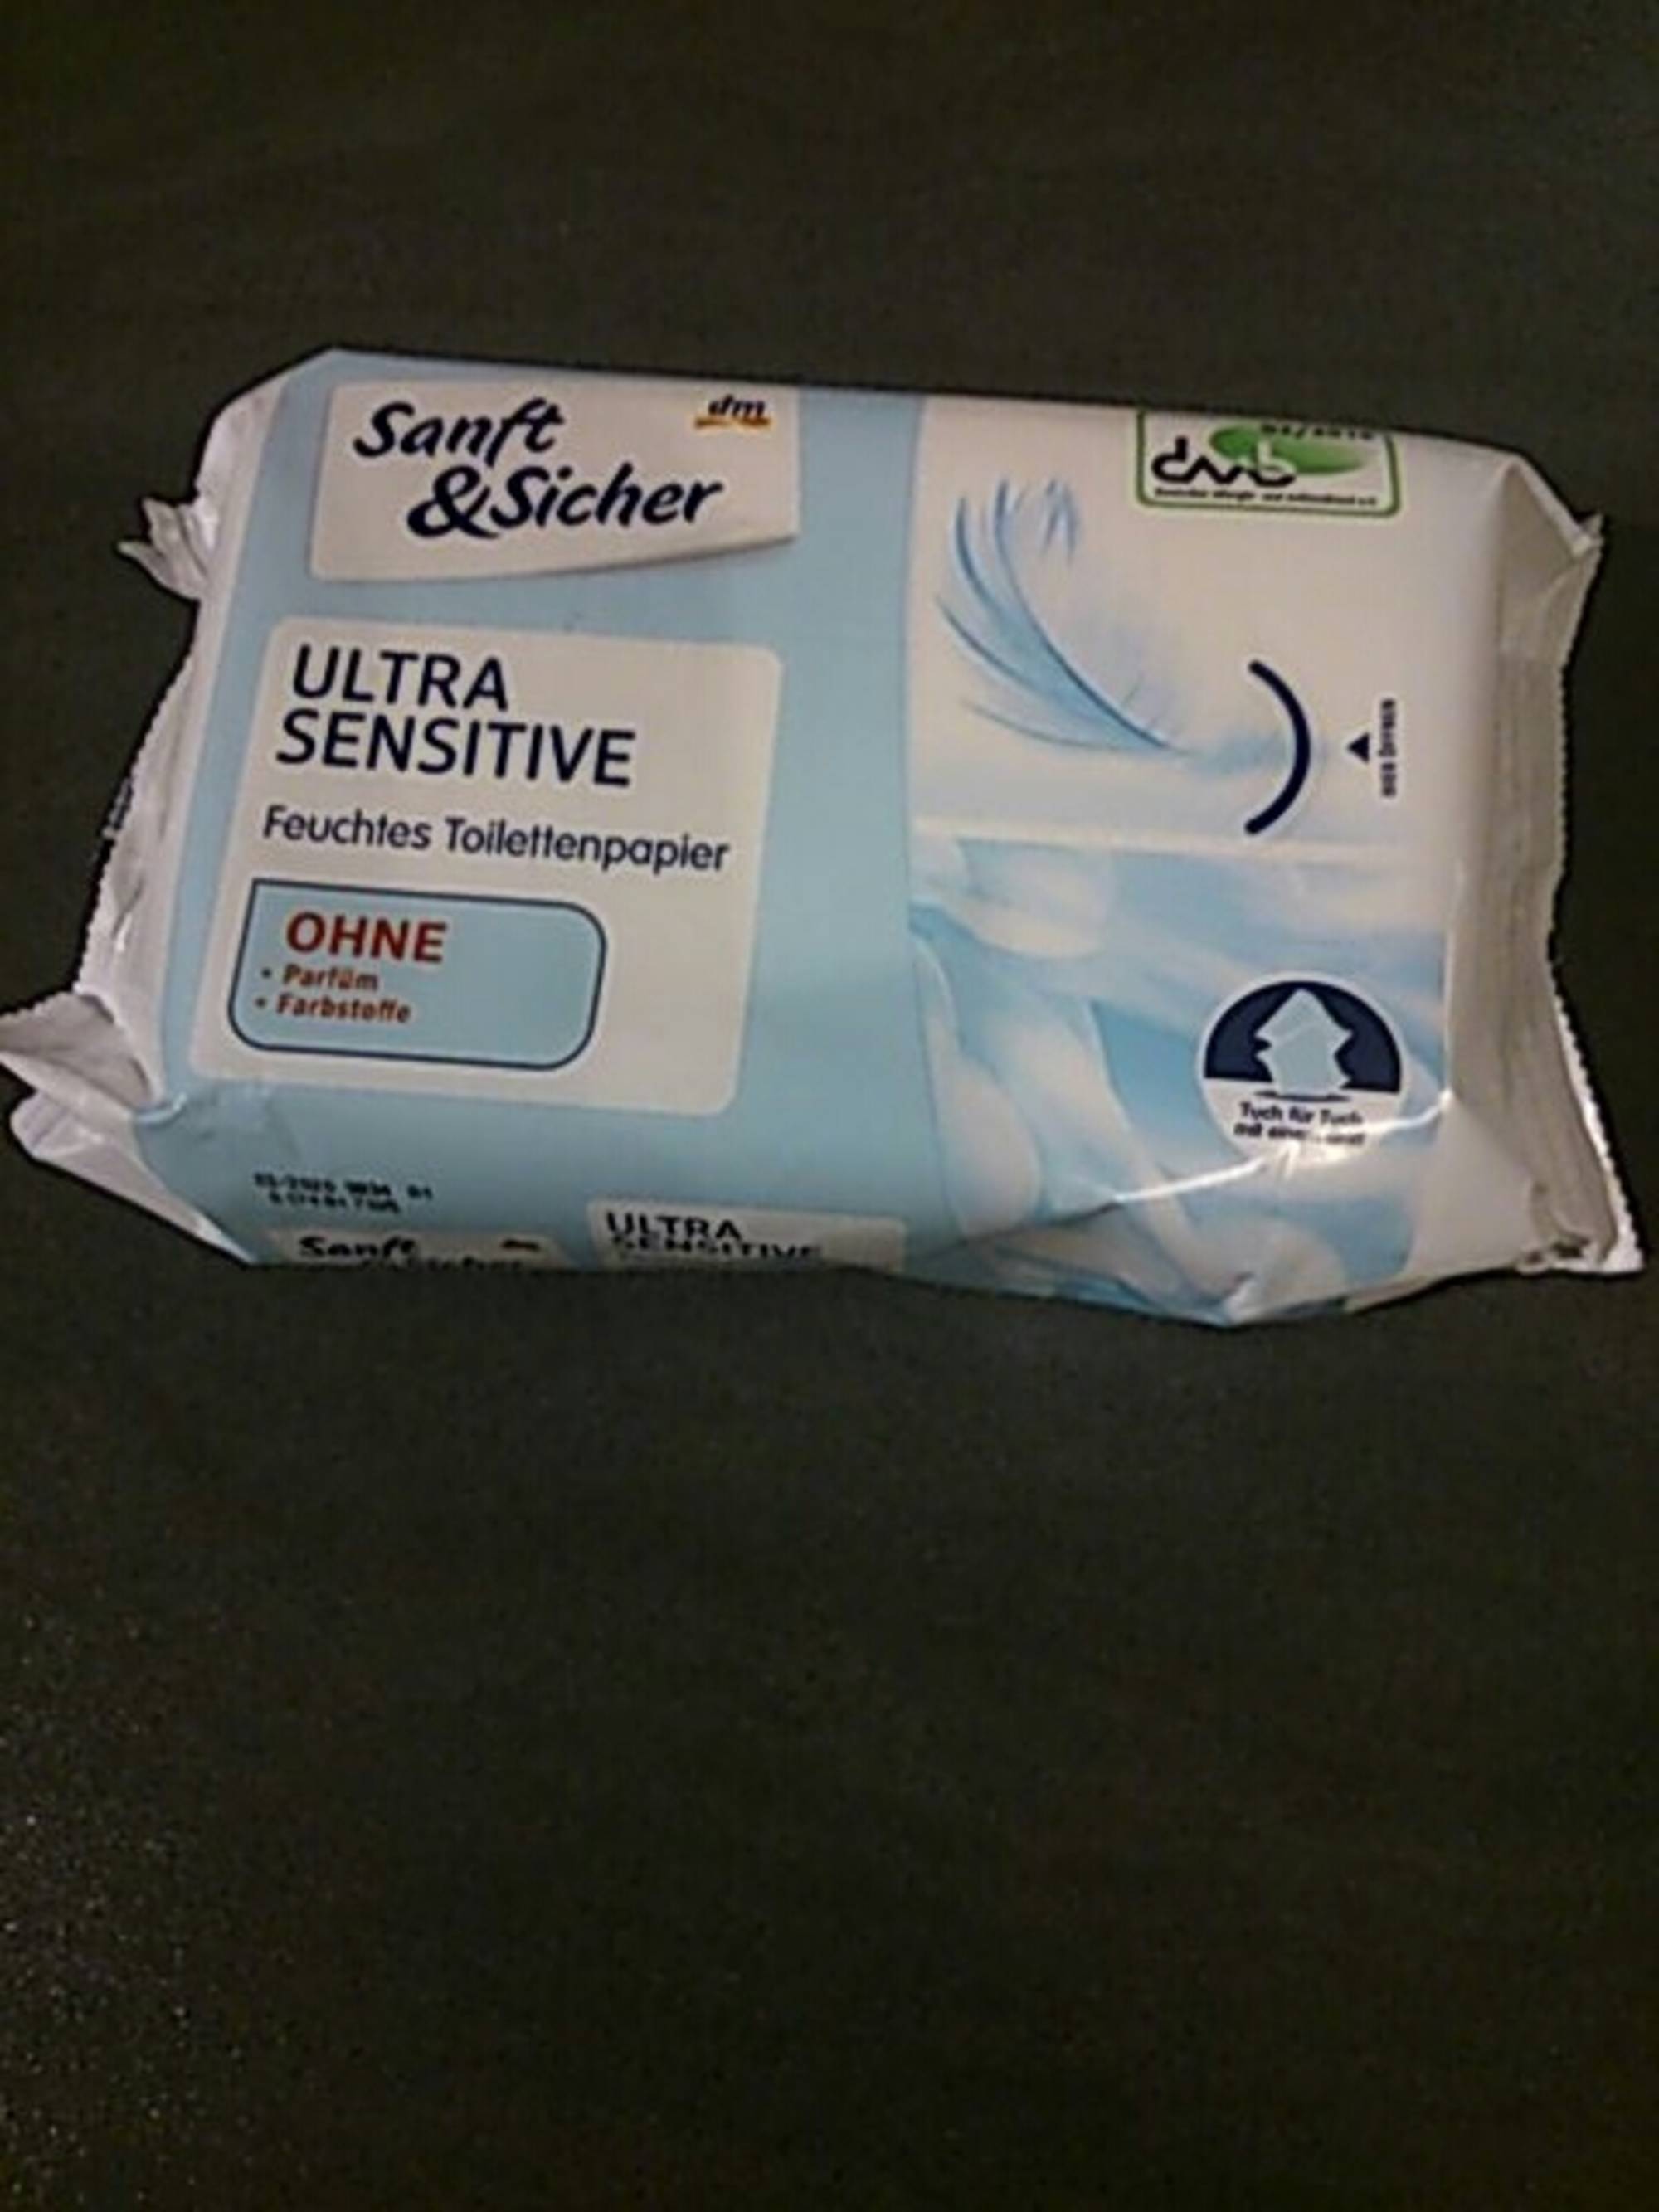 SANFT & SICHER - Ultra sensitive - Feuchtes toilettenpapier